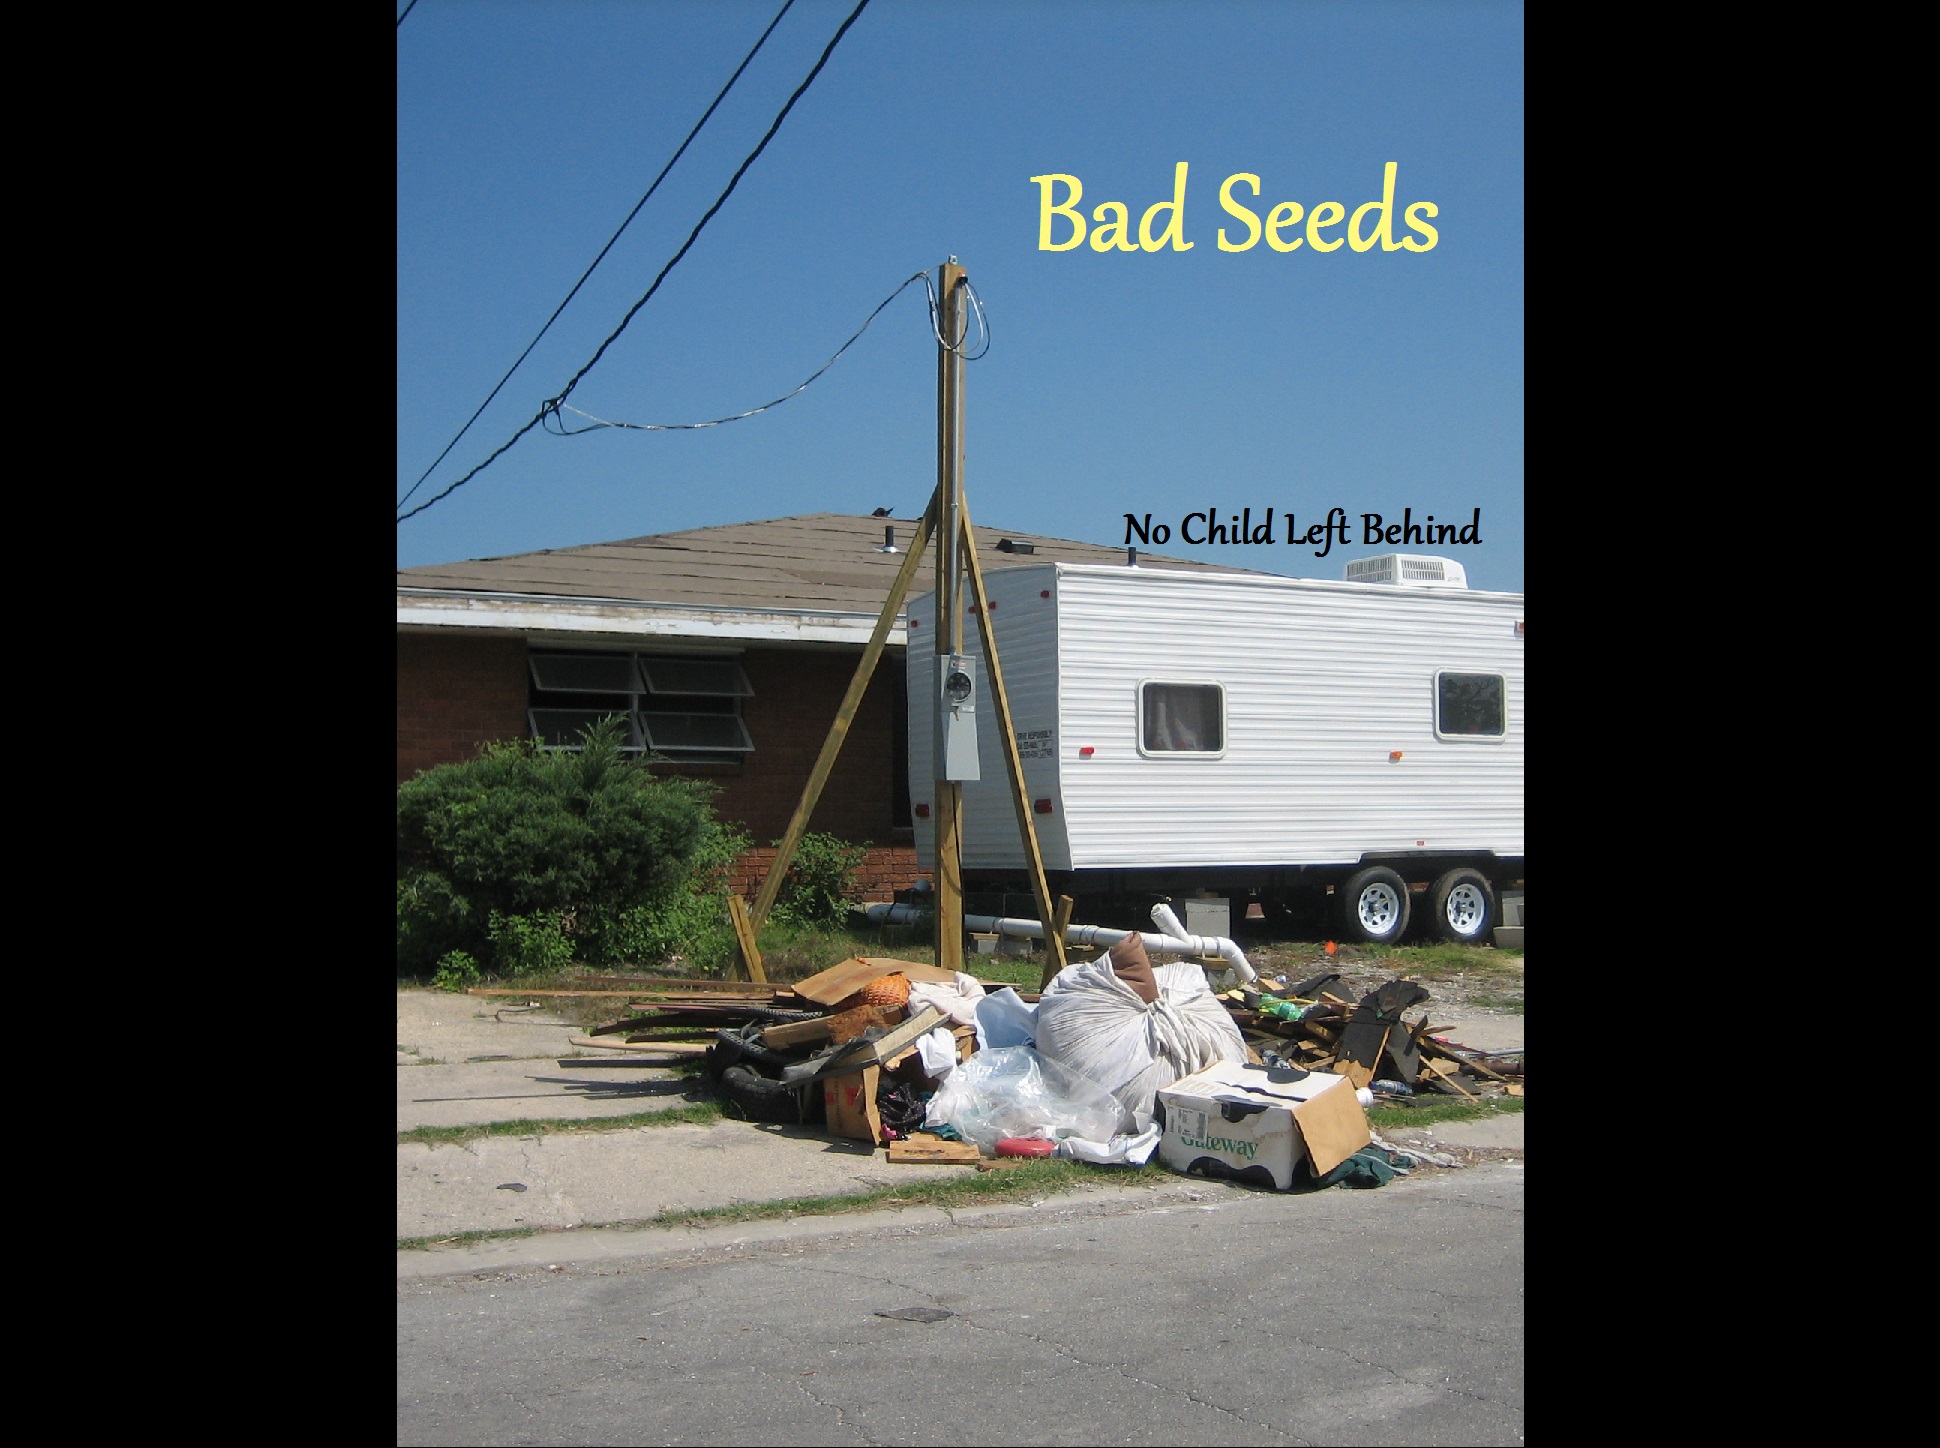 Episode 8 - Bad Seeds